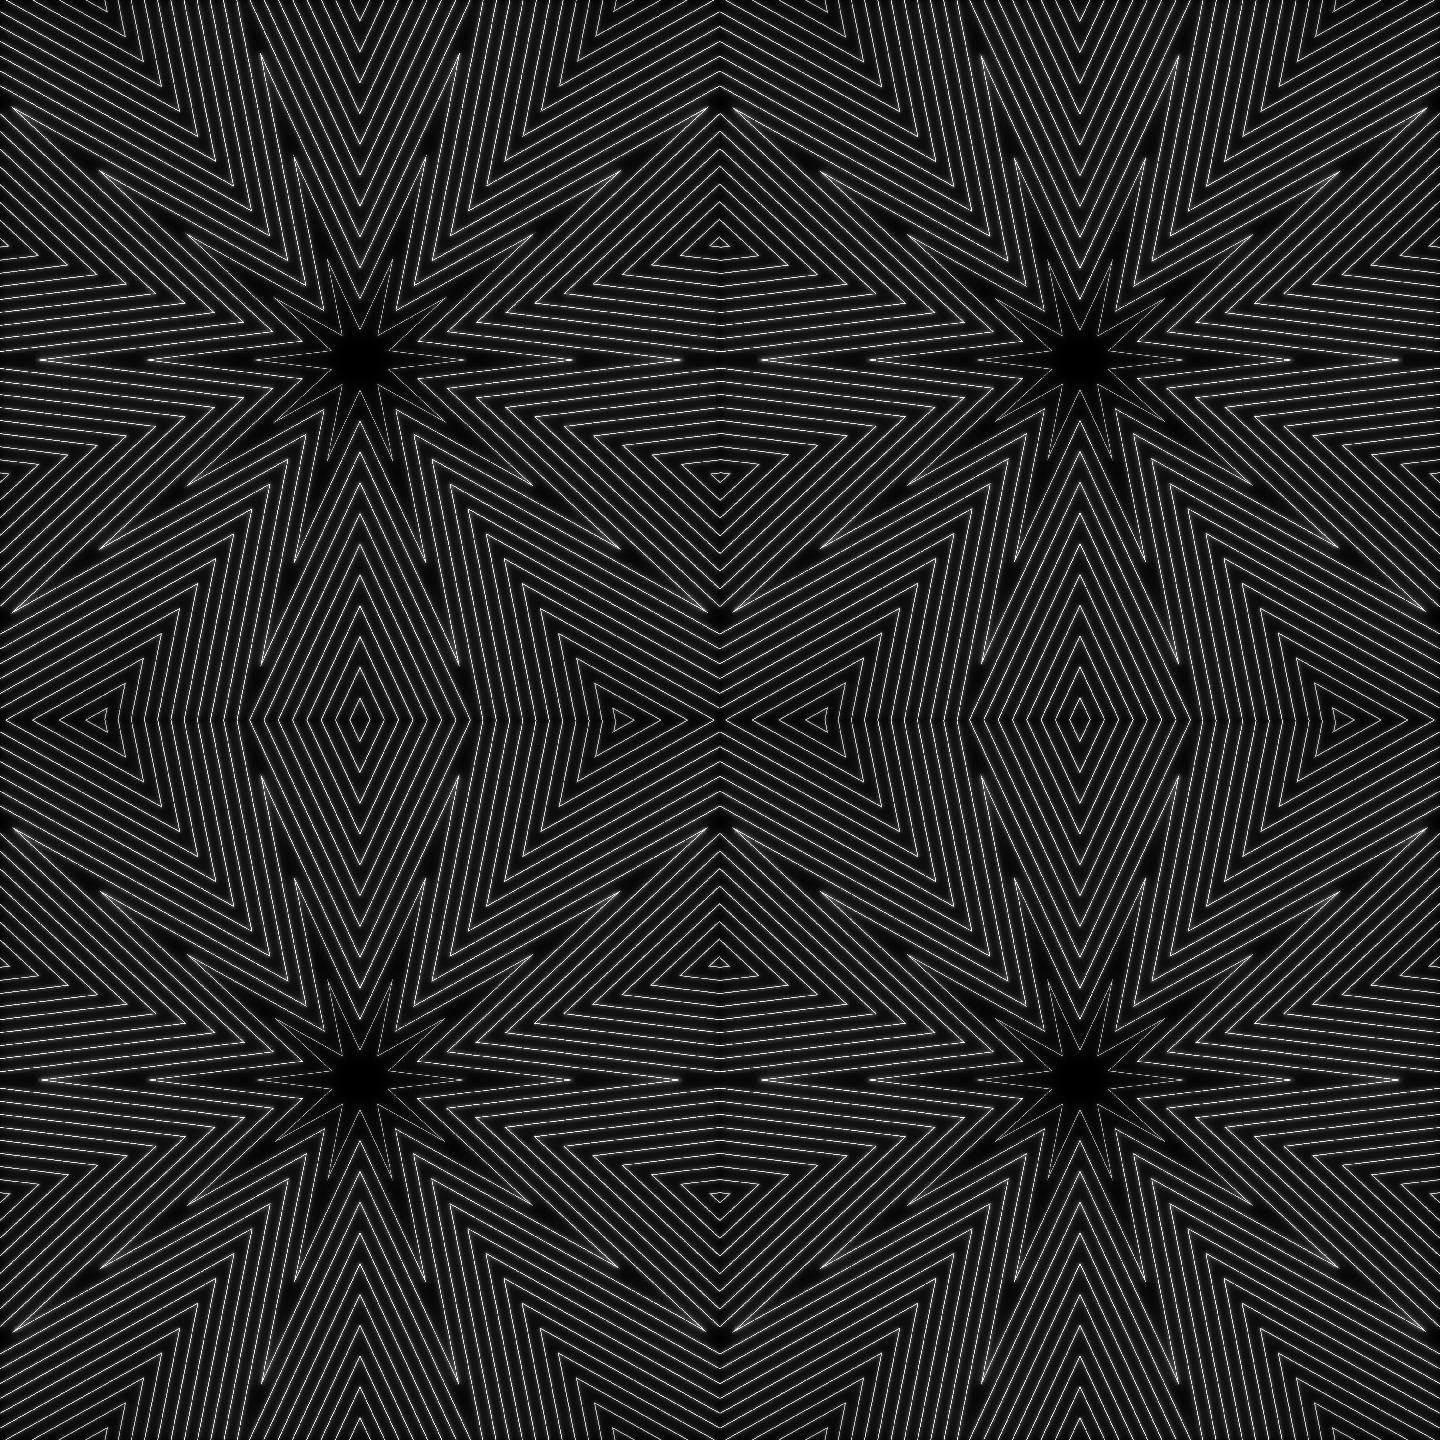 【超清】黑白线条几何背景无缝循环 14